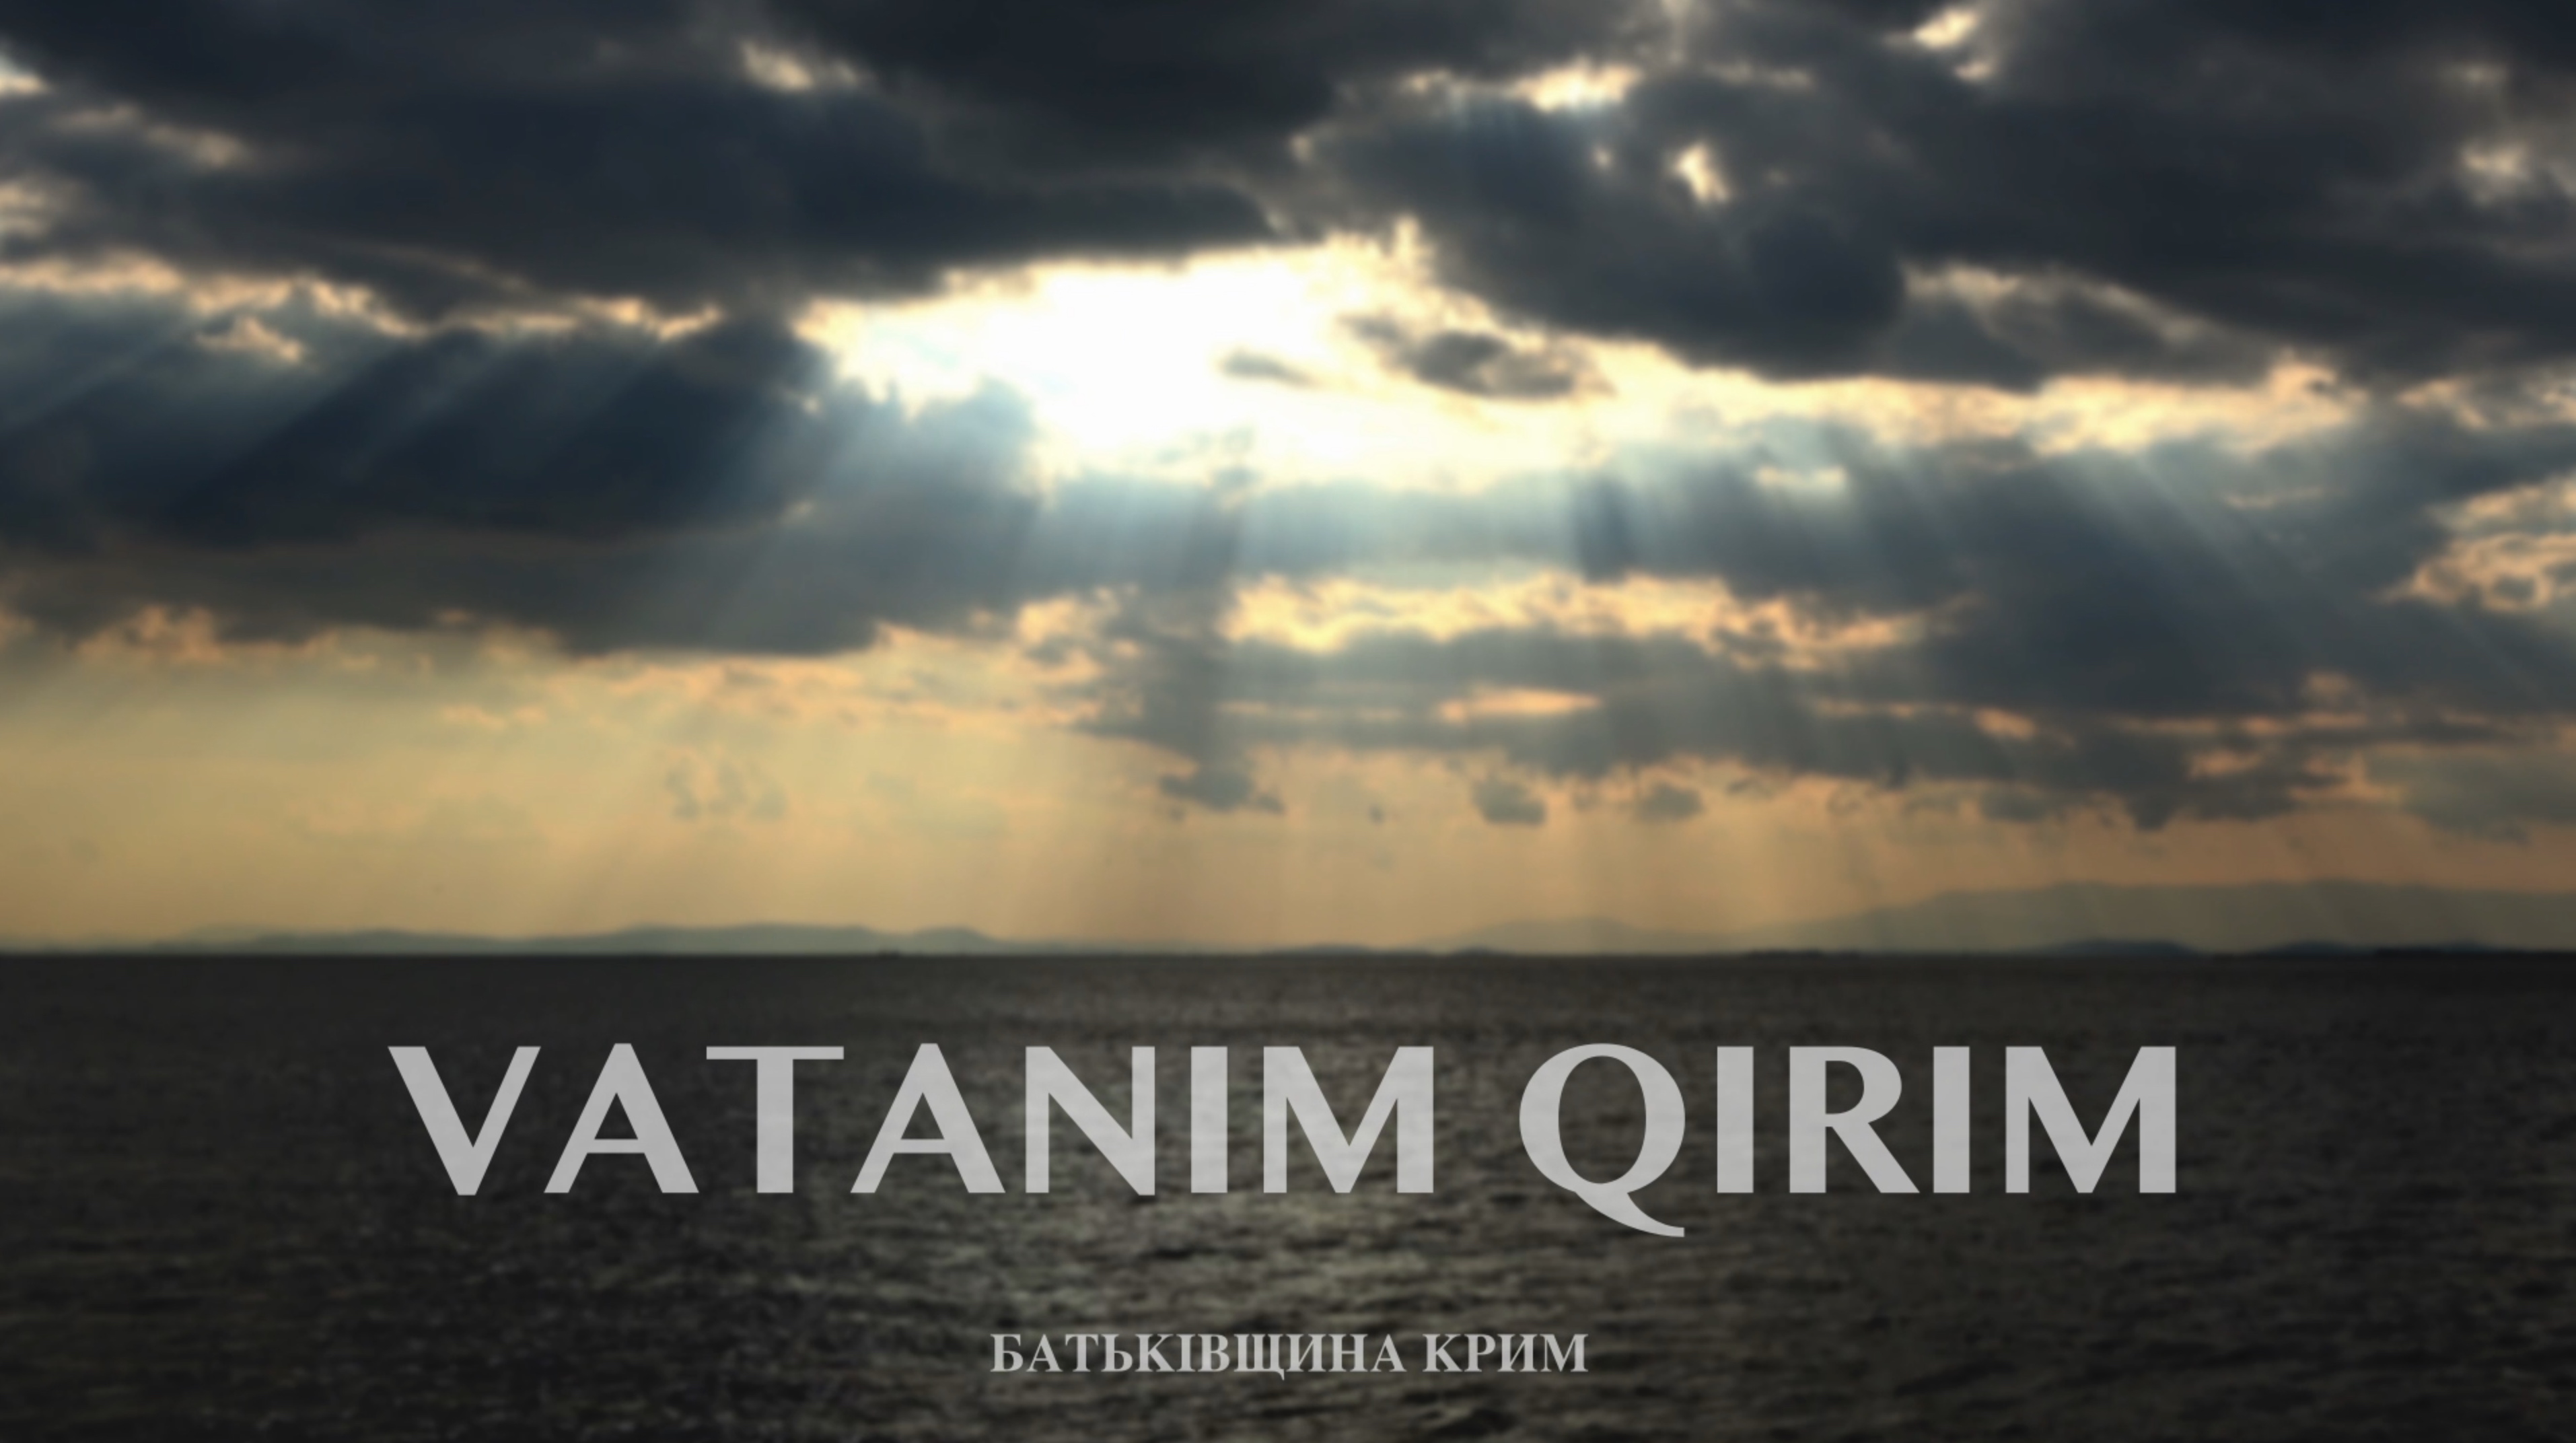 Премʼєра документального фільму “Vatanım Qırım”. Чому стрічку неодмінно варто дивитись?